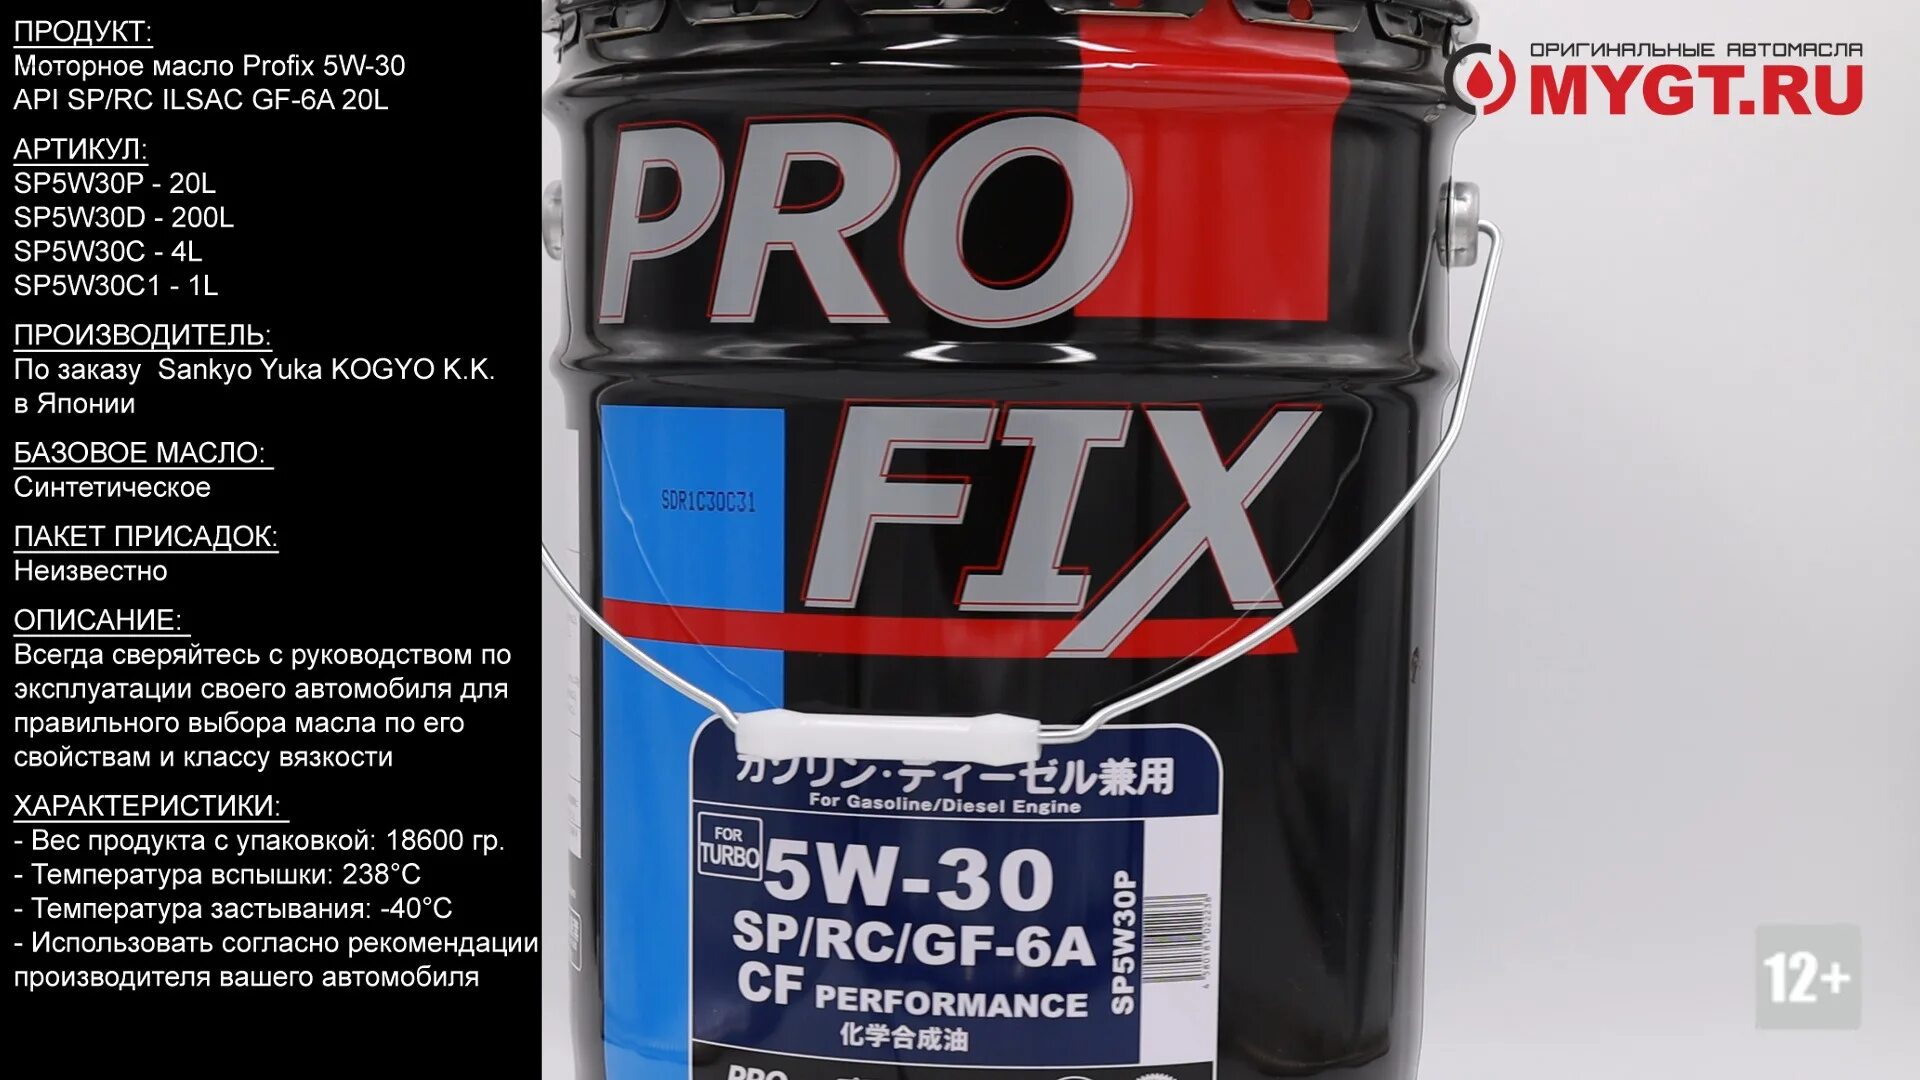 PROFIX SP/gf-6a 5w30. PROFIX 5w30 gf-6a. PROFIX 5w30 SP. Sp5w30c1 PROFIX. Cf 6a масло